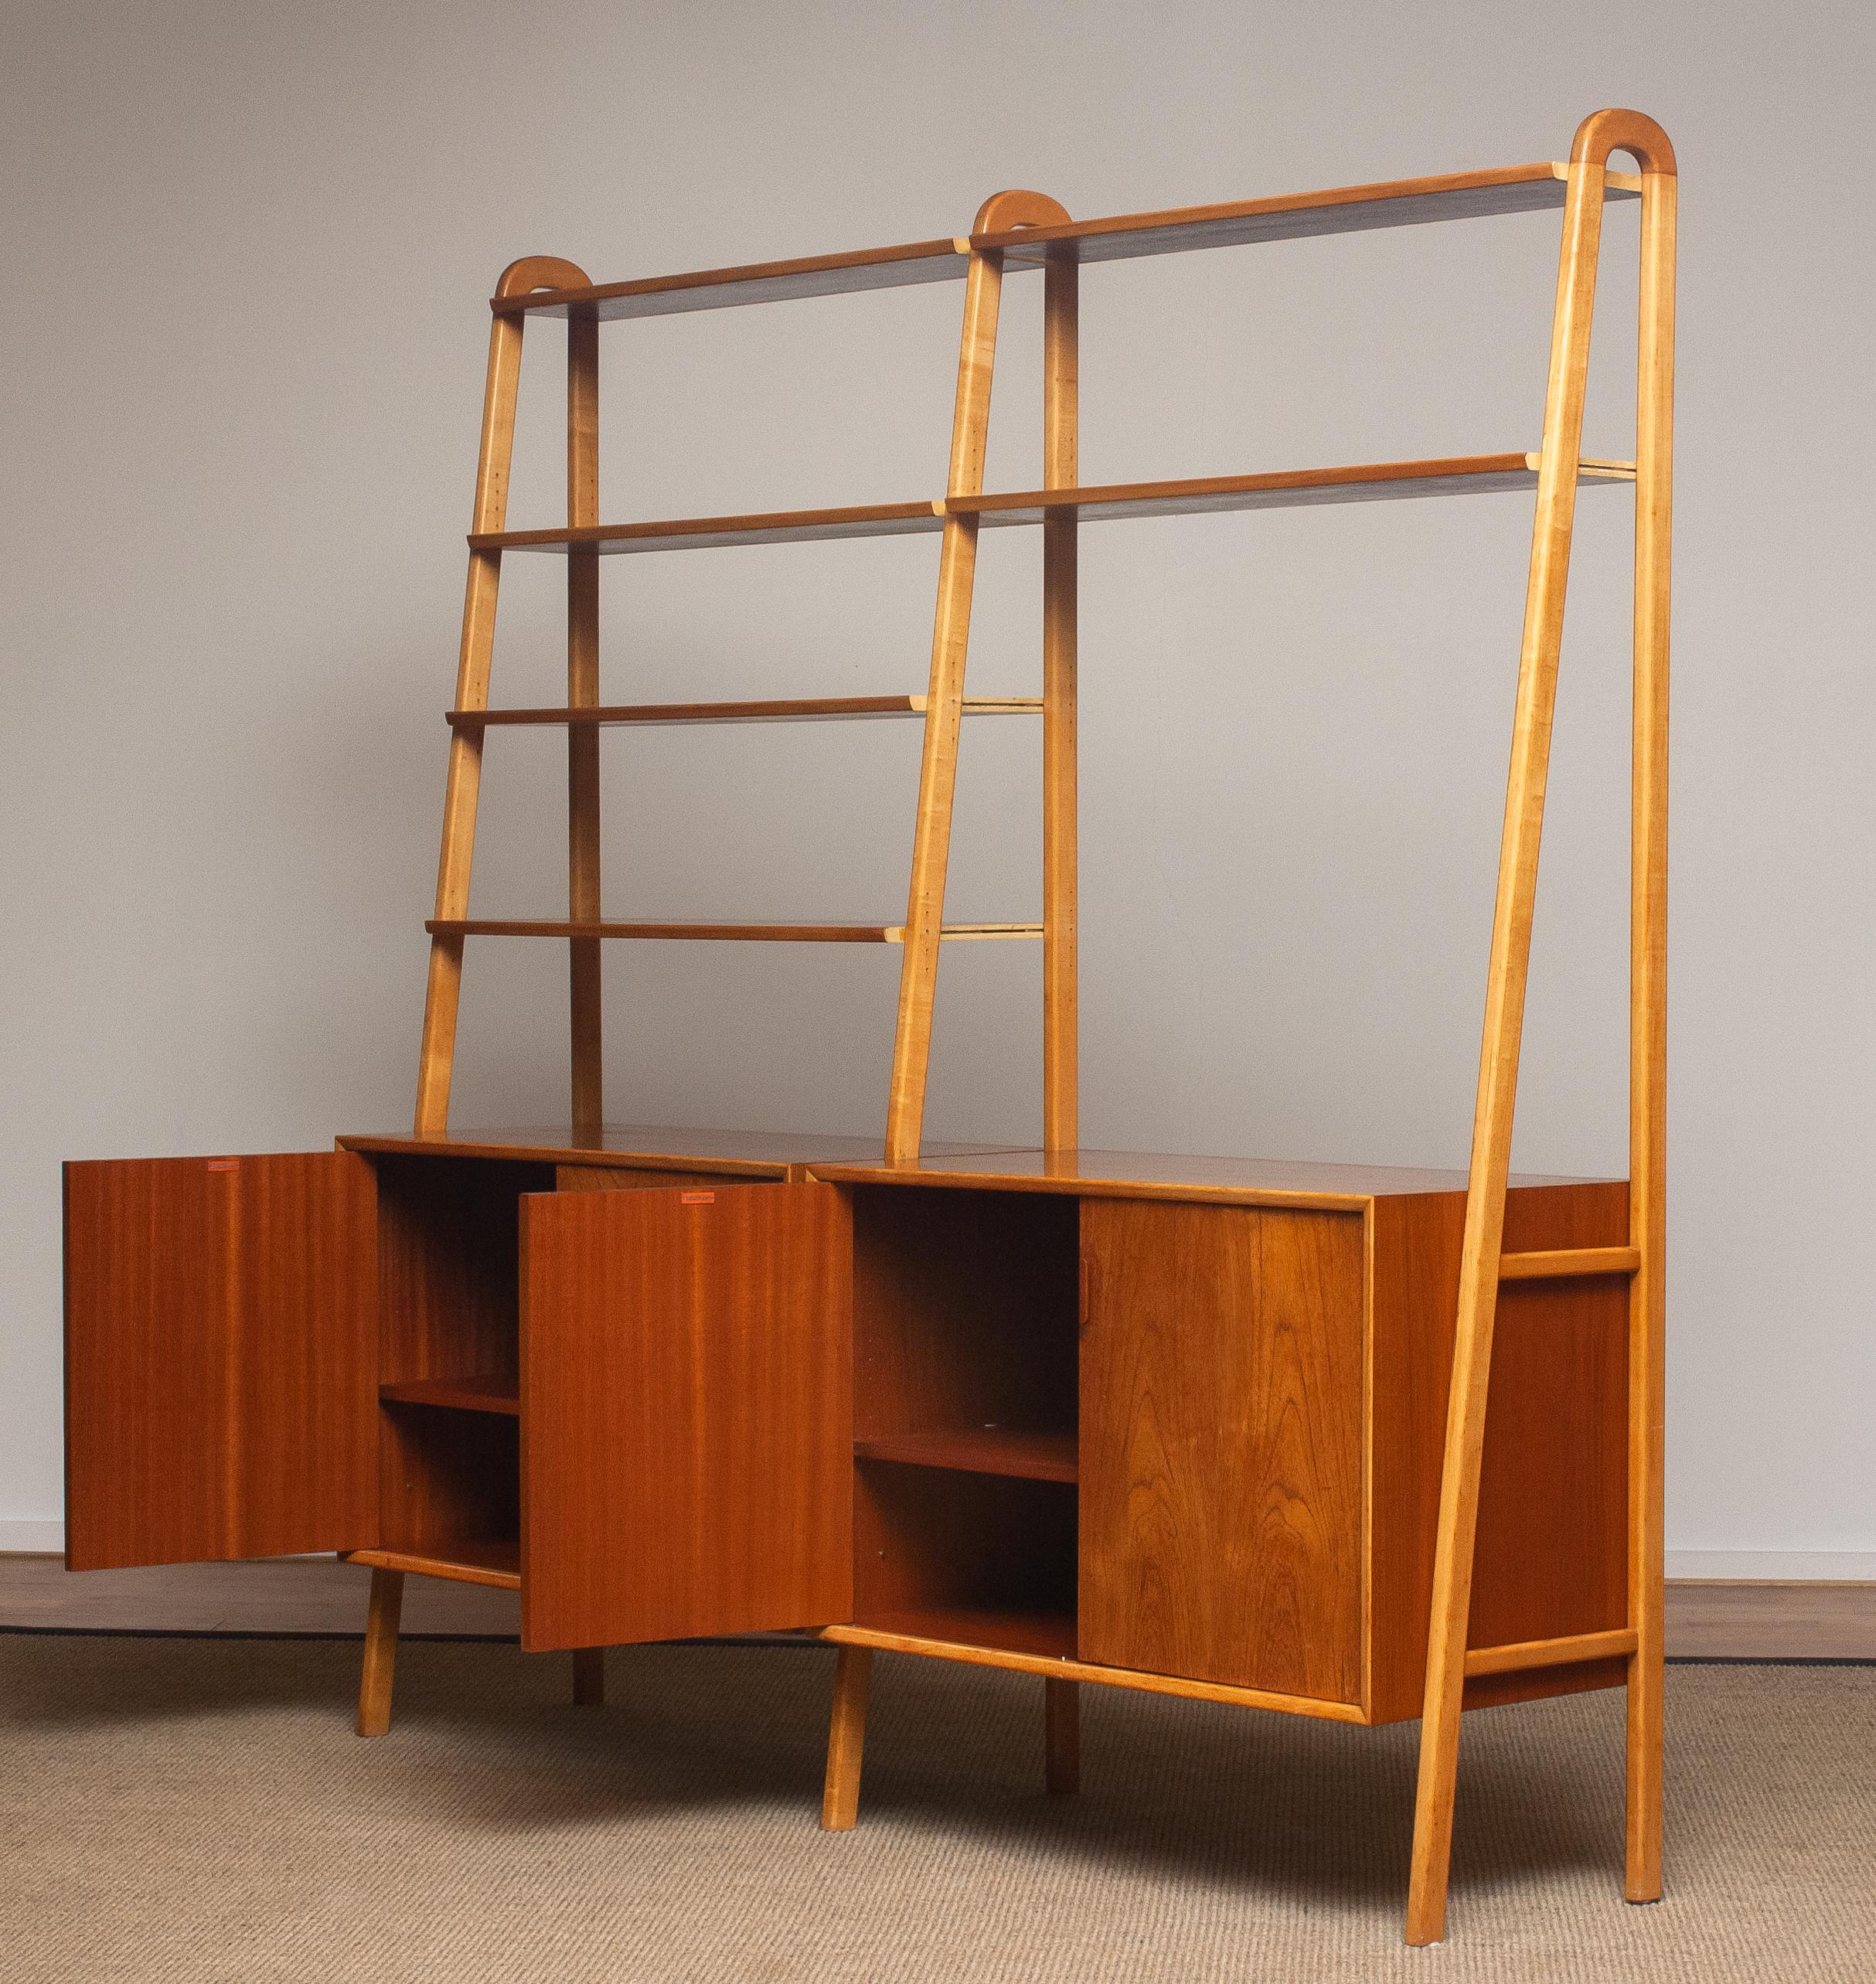 1950s Shelfs / Bookcase / Sideboard in Teak and Beech by Brantorps, Sweden 1